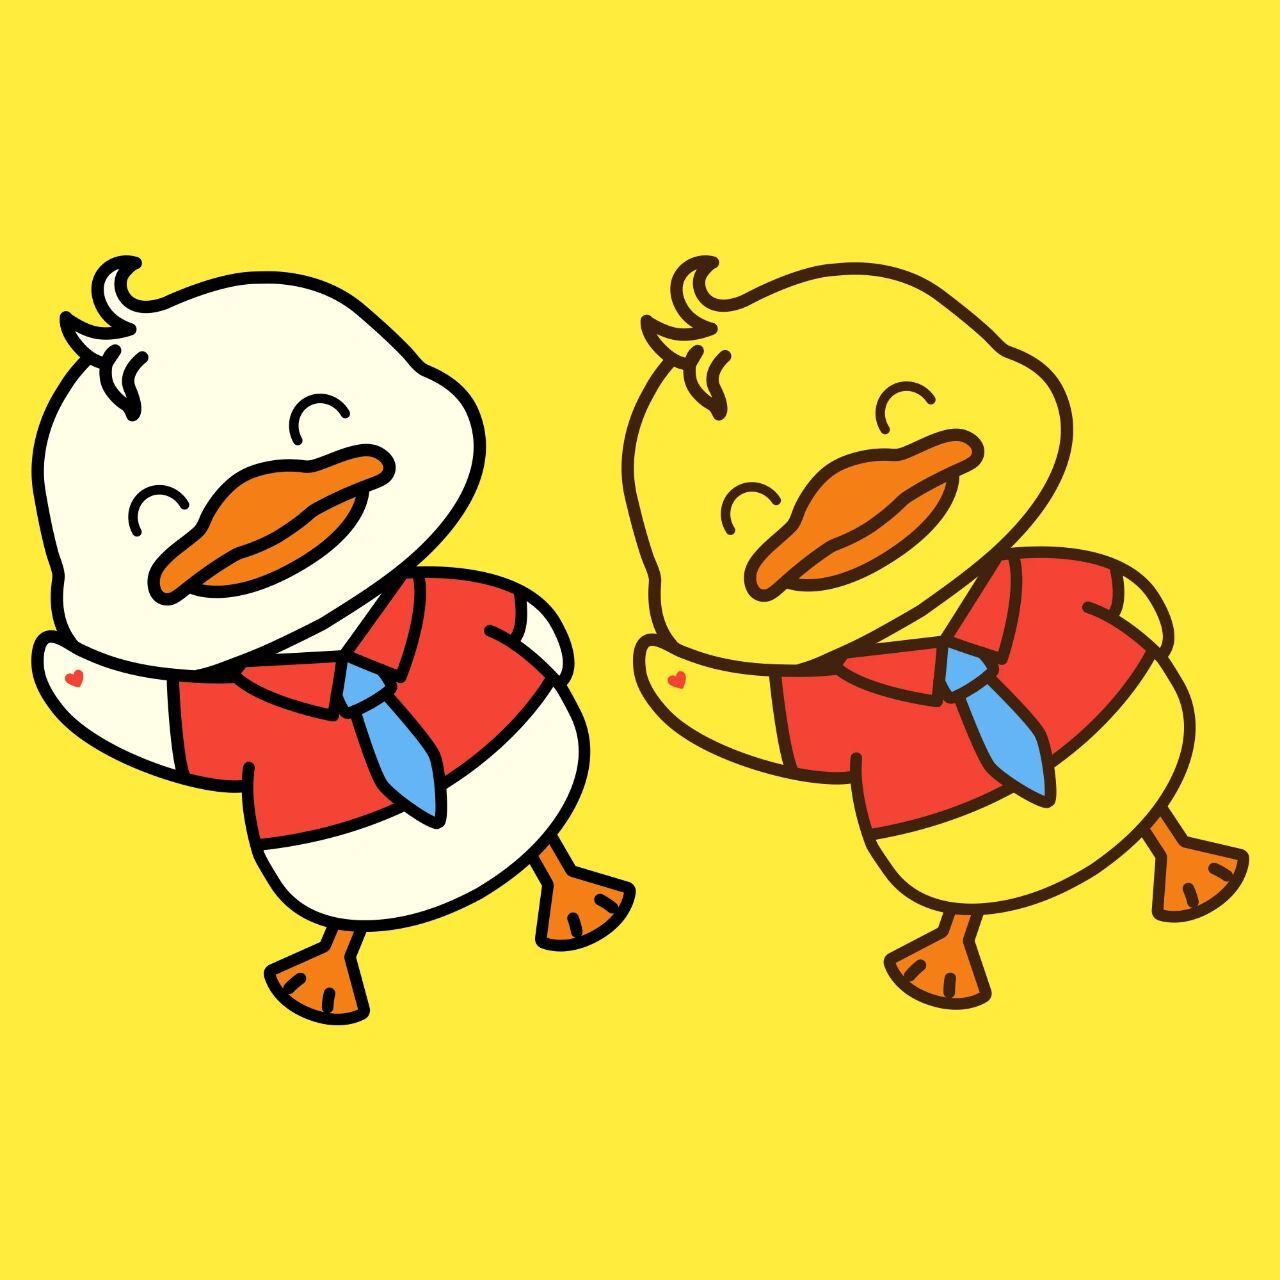 小黄鸭,好运鸭,卡通形象设计,头像分享